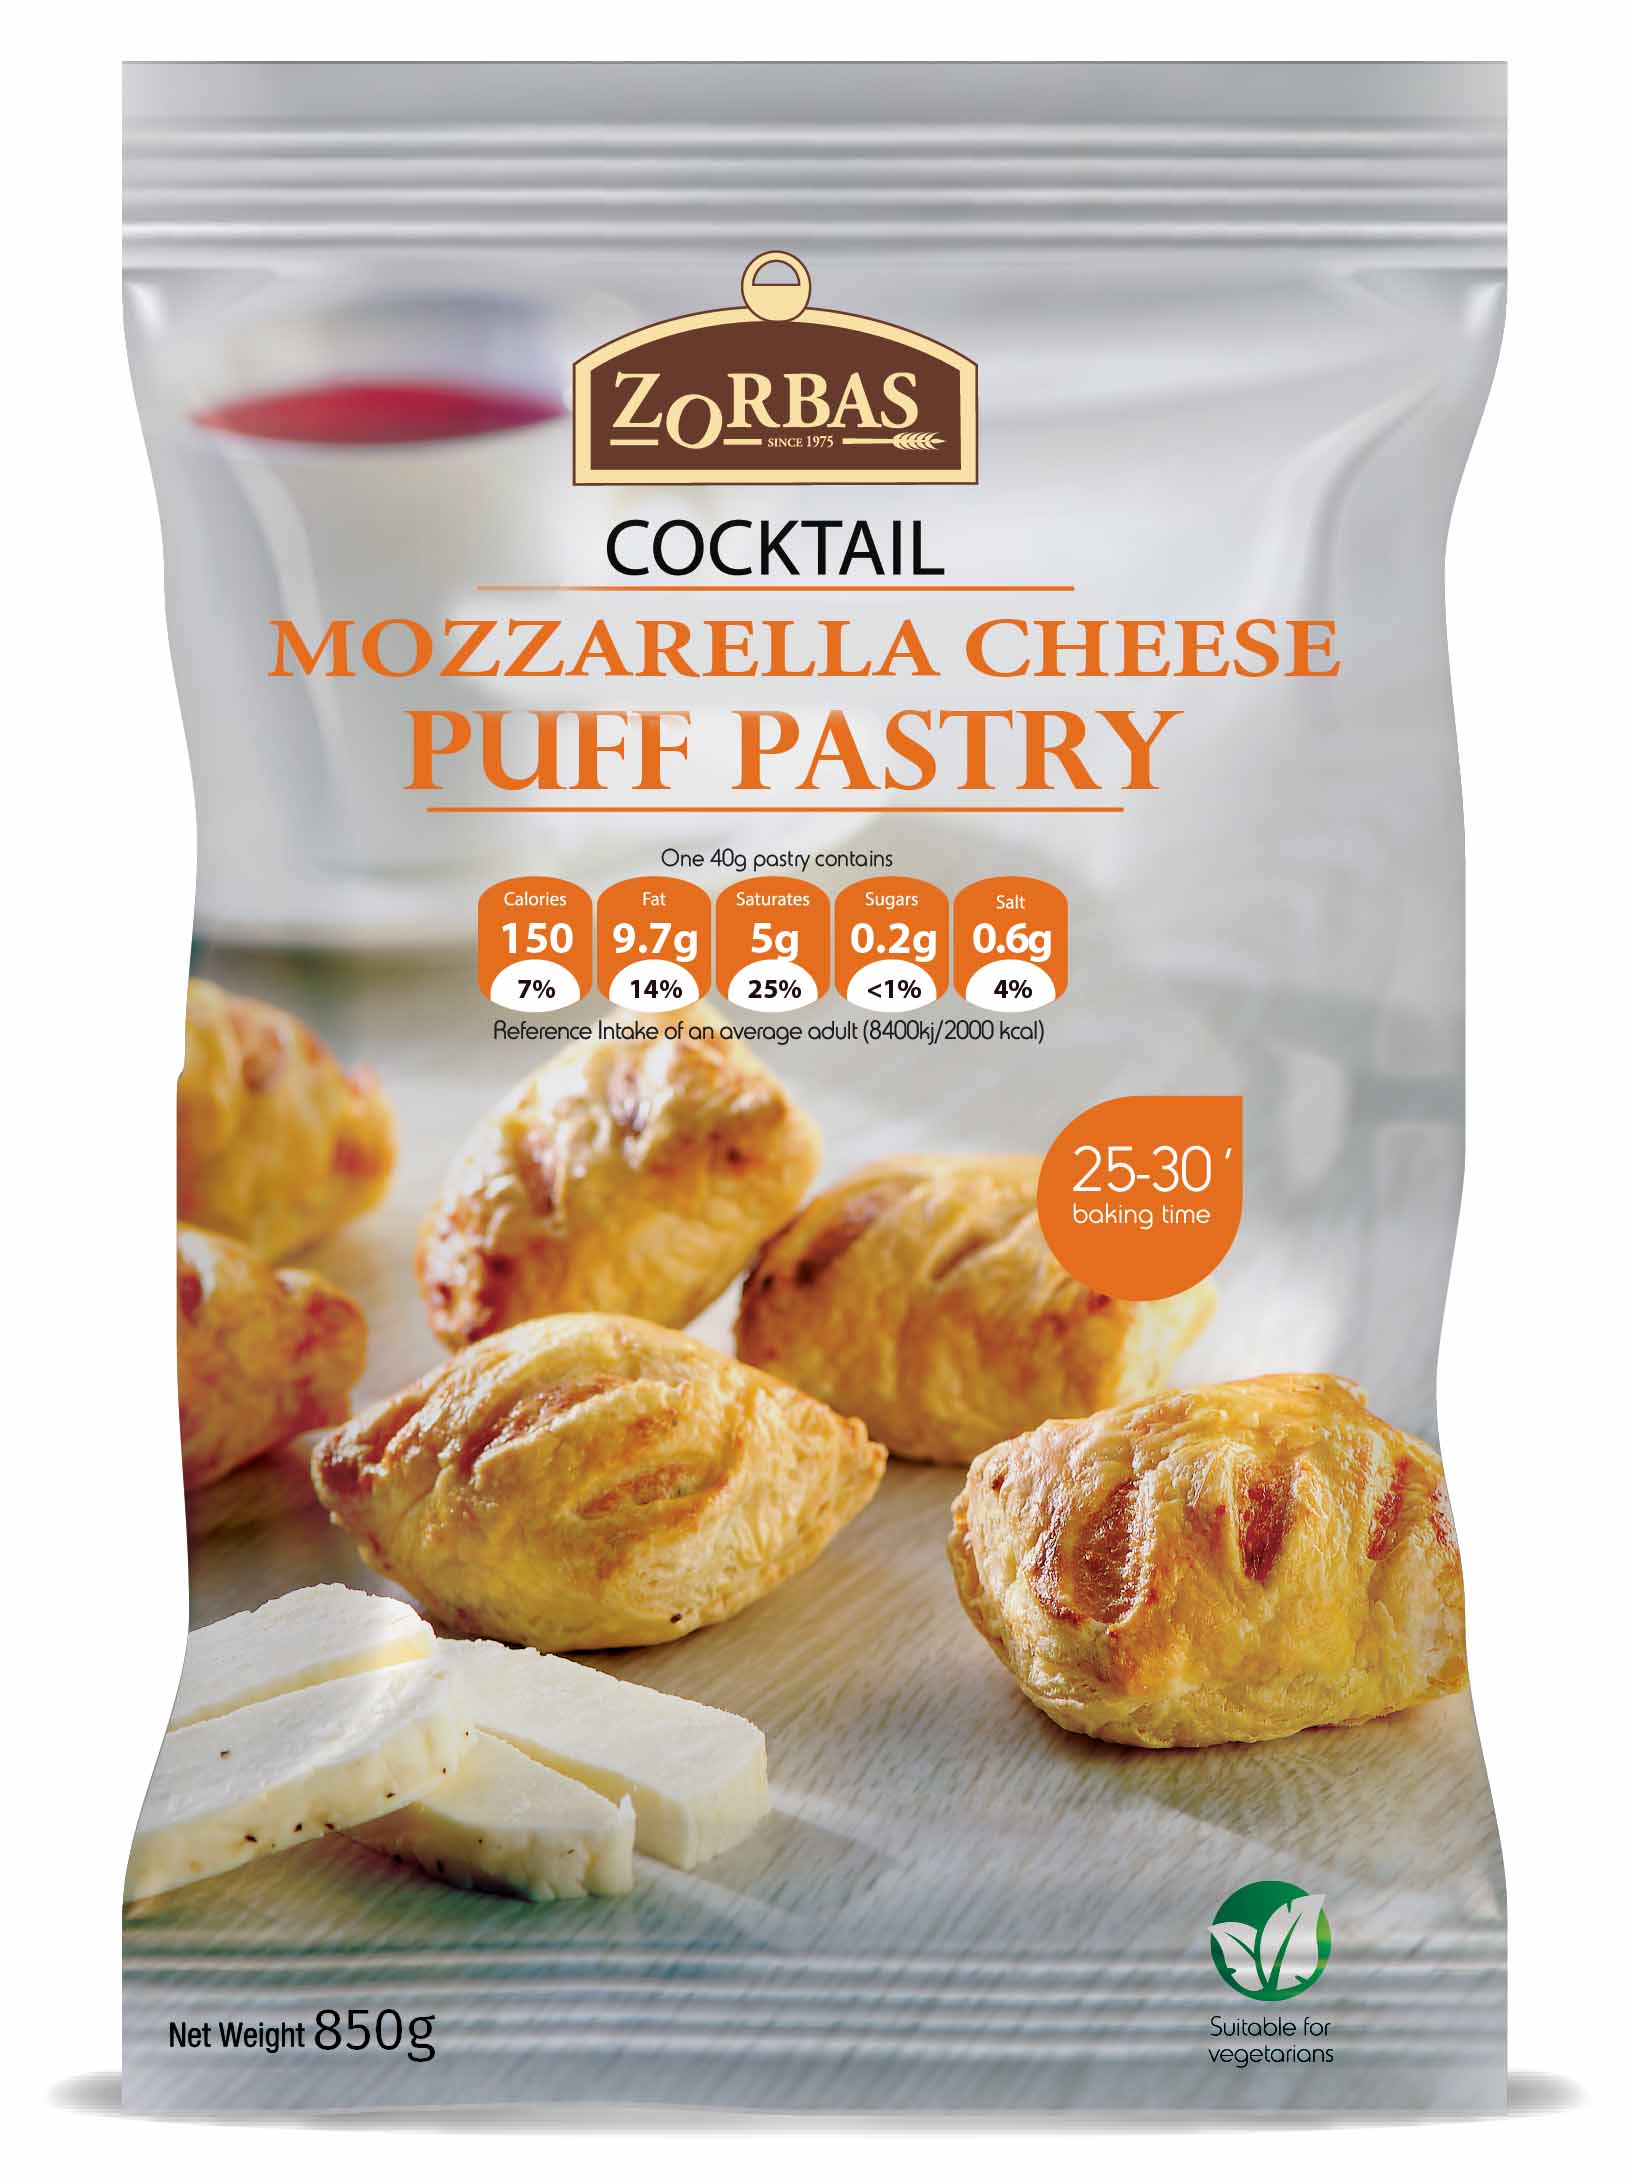 Mozzarella puff pastry bites